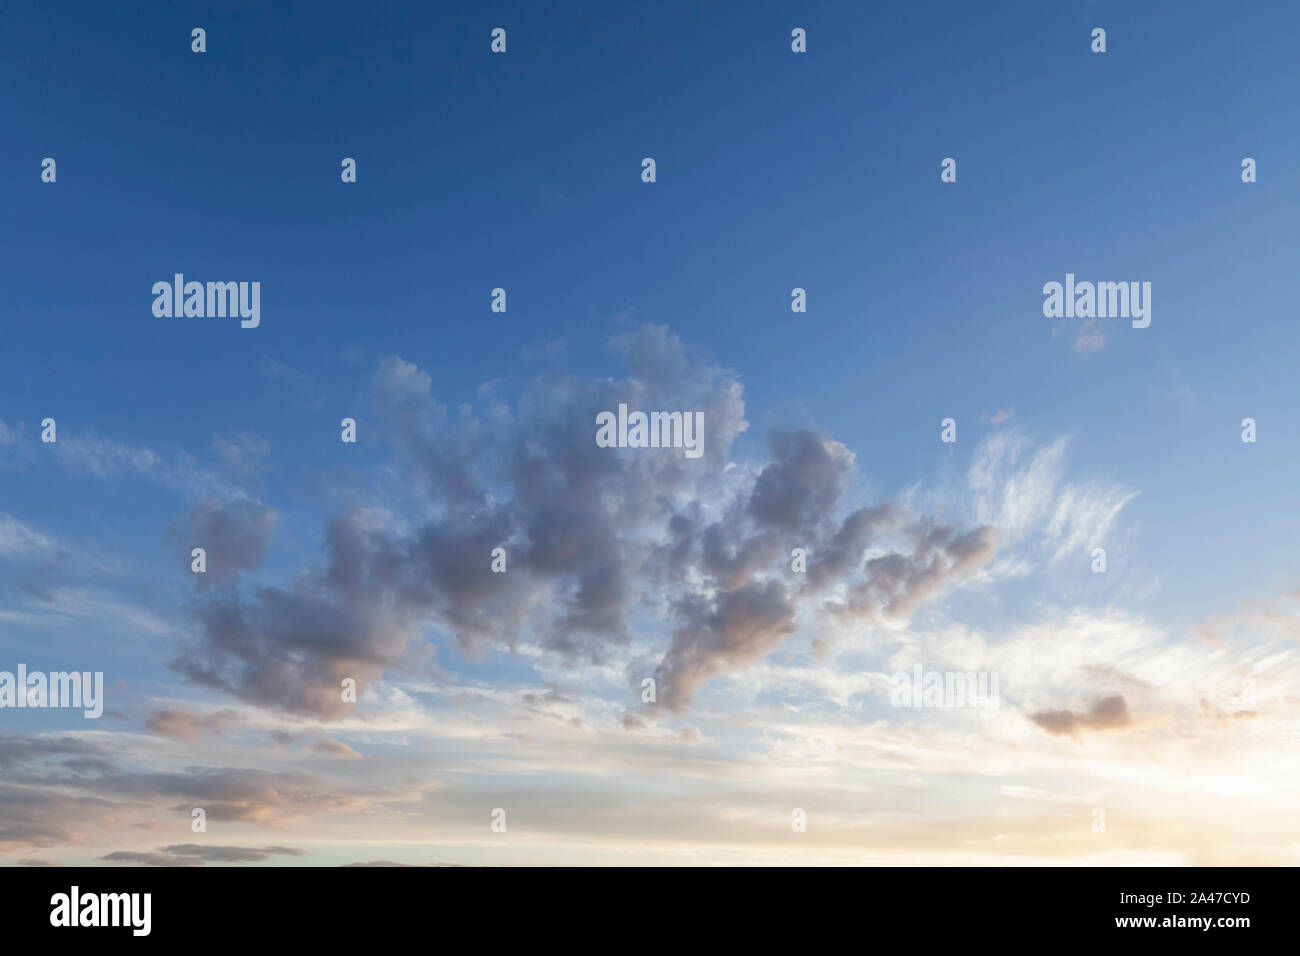 Schöne skyscape Sonnenaufgang mit wispy Wolken und blauer Himmel Stockfoto